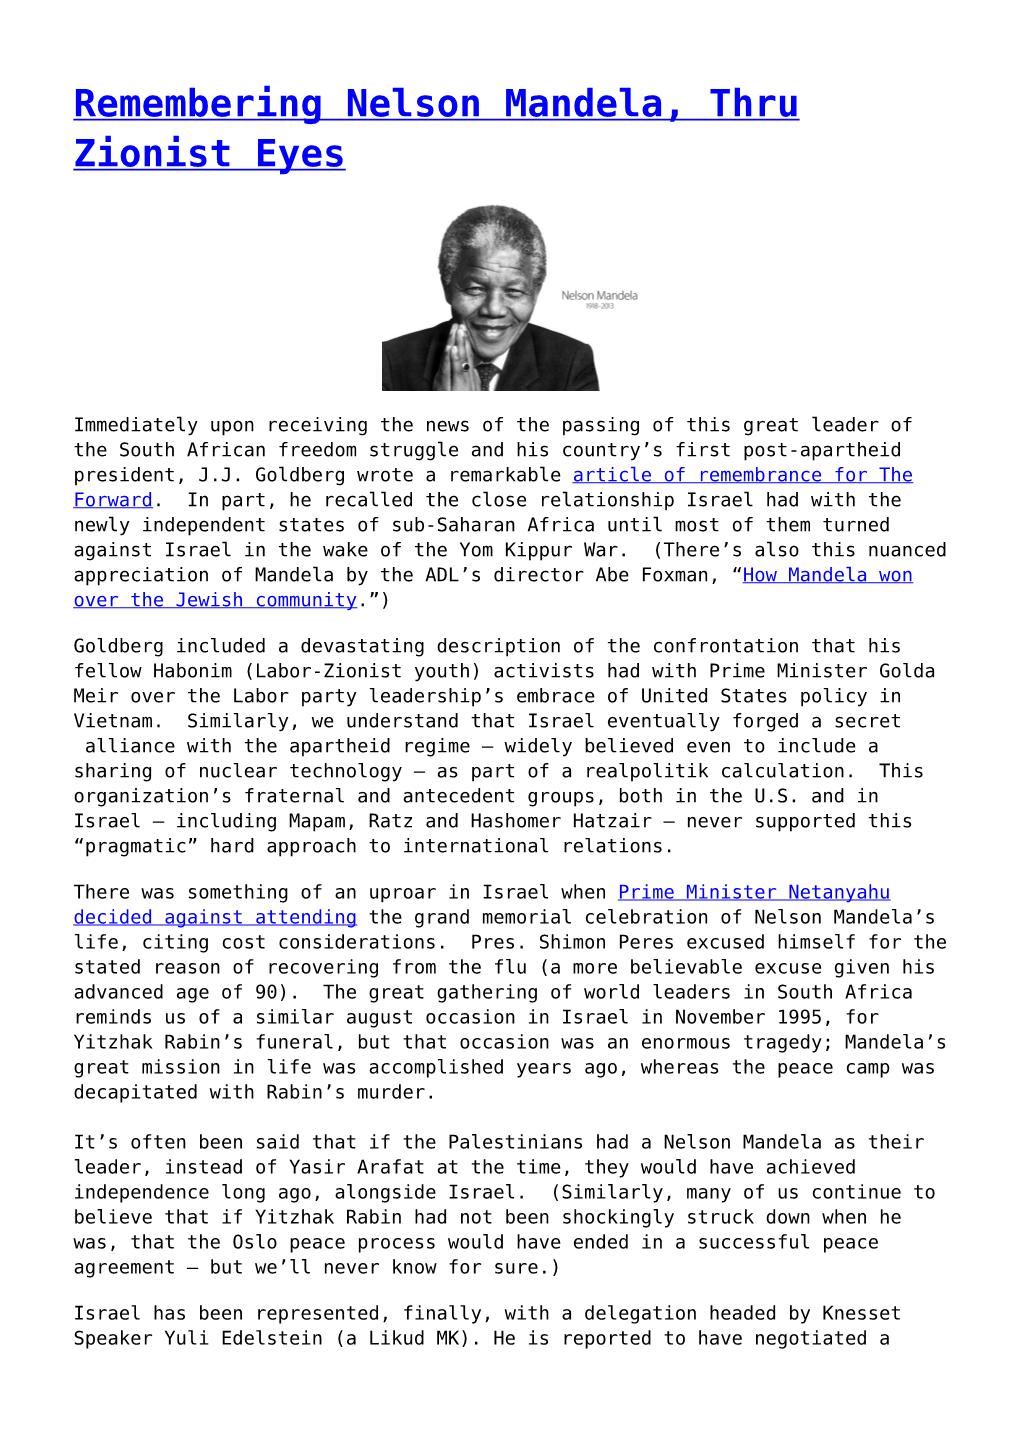 Remembering Nelson Mandela, Thru Zionist Eyes